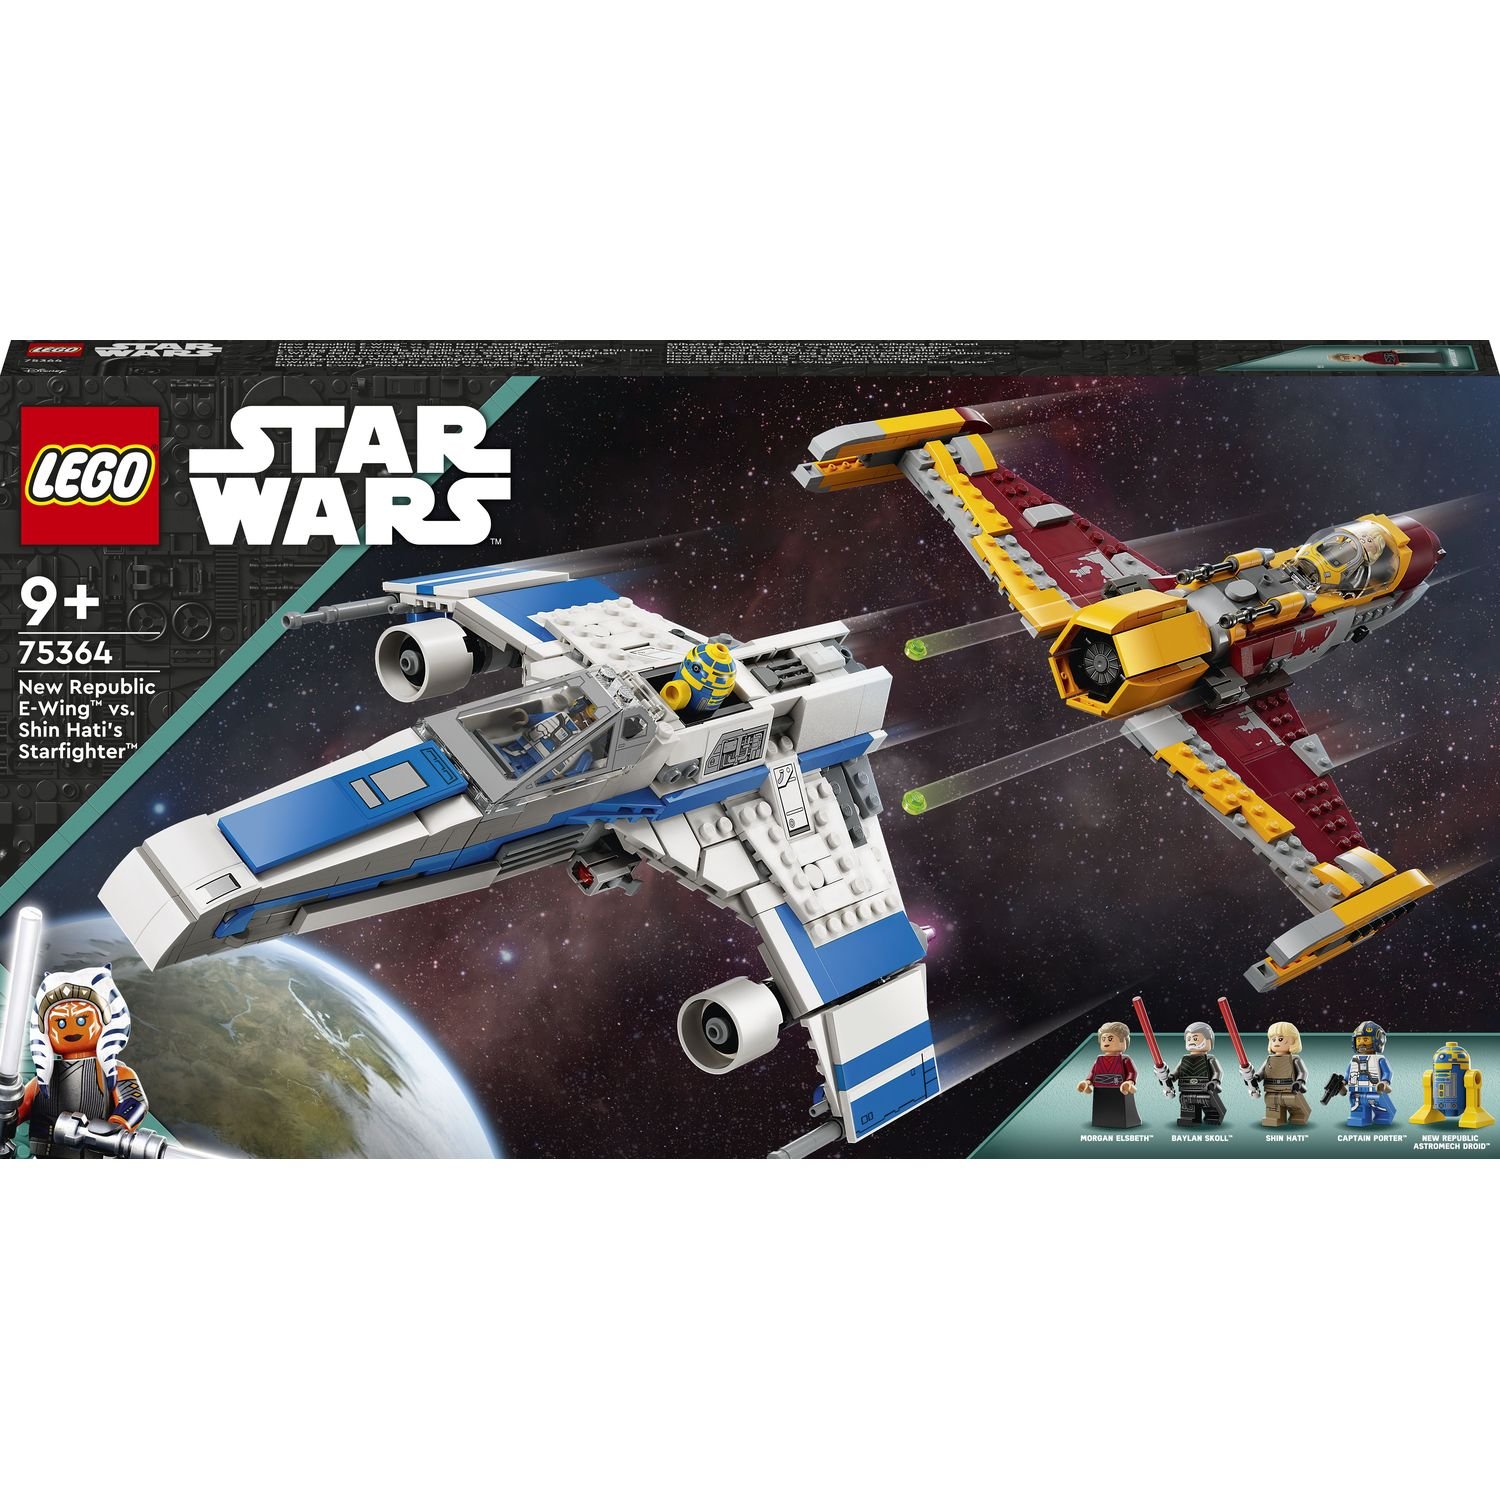 Конструктор LEGO Star Wars Винищувач Нової Республіки E-Wing проти Зоряного винищувача Шин Хаті, 1056 деталей (75364) - фото 1